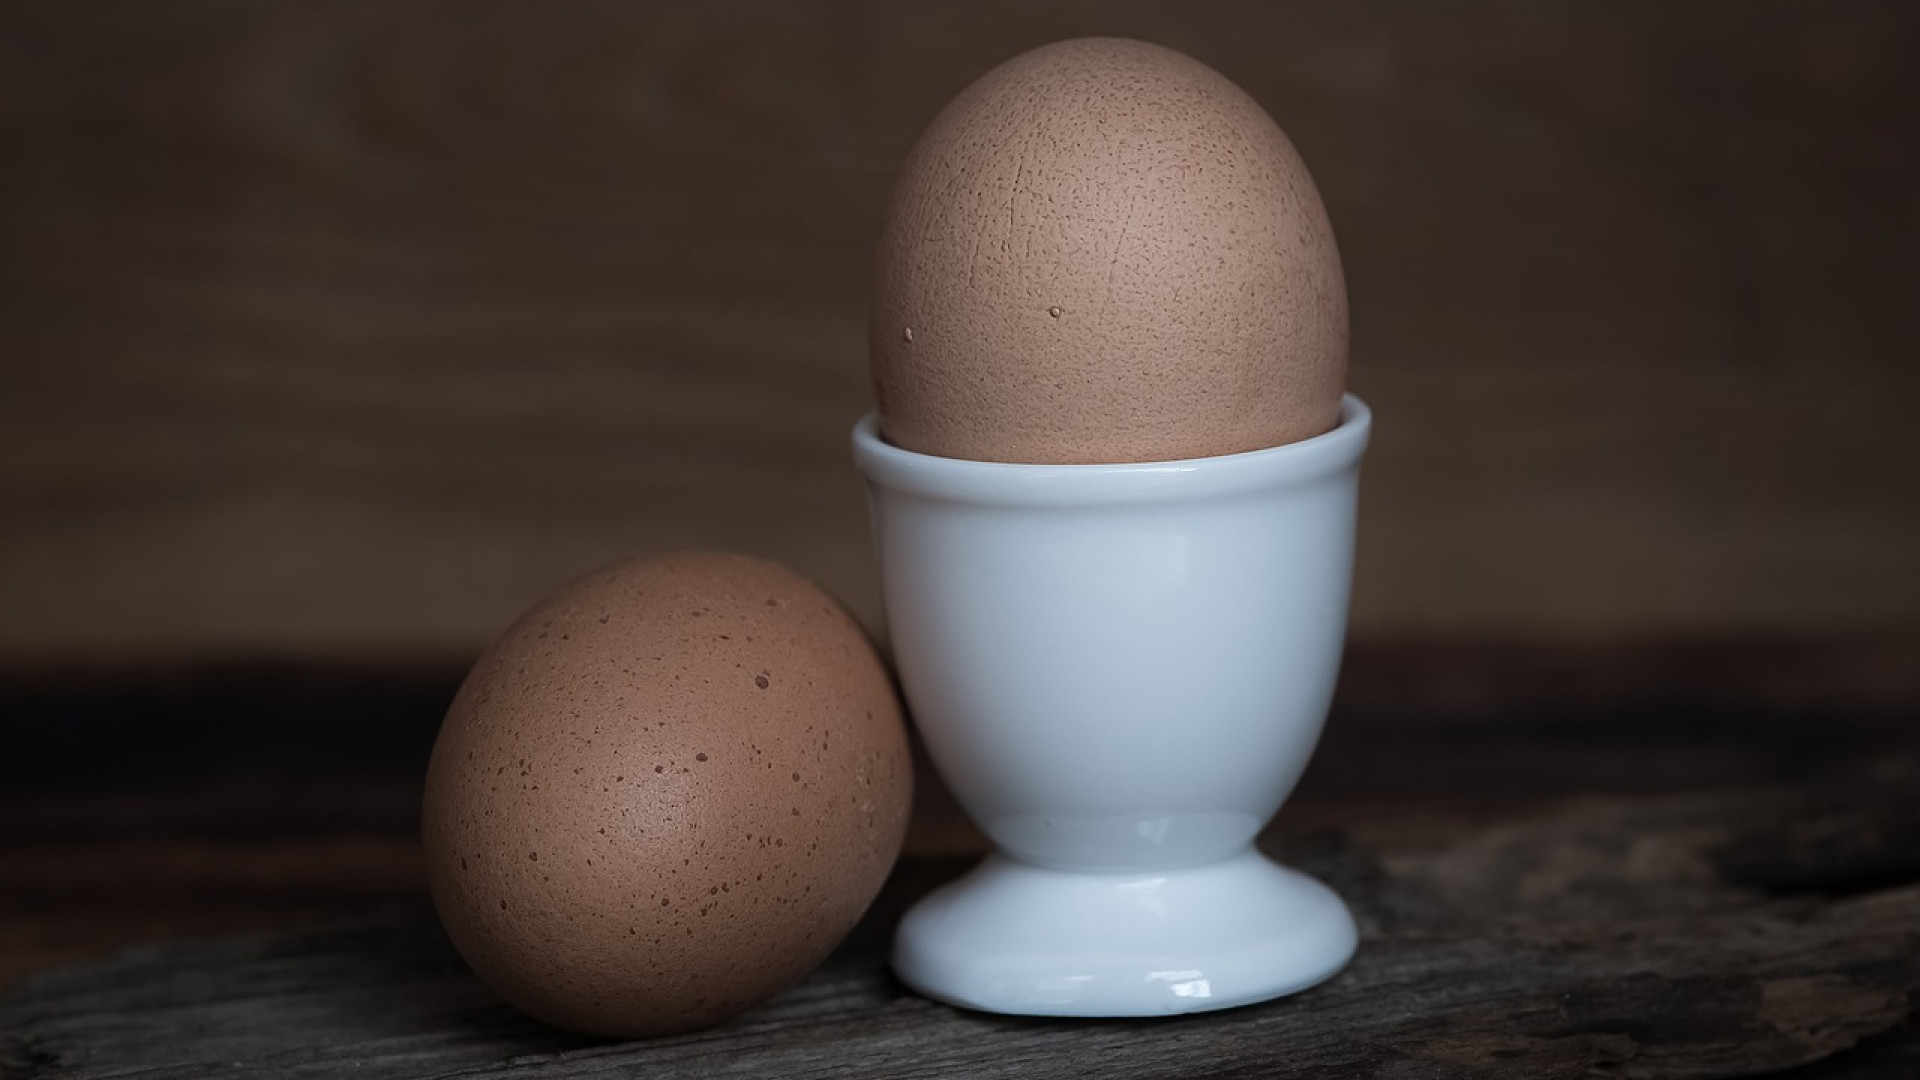 Le scandale des œufs contaminés inquiète les éleveurs français